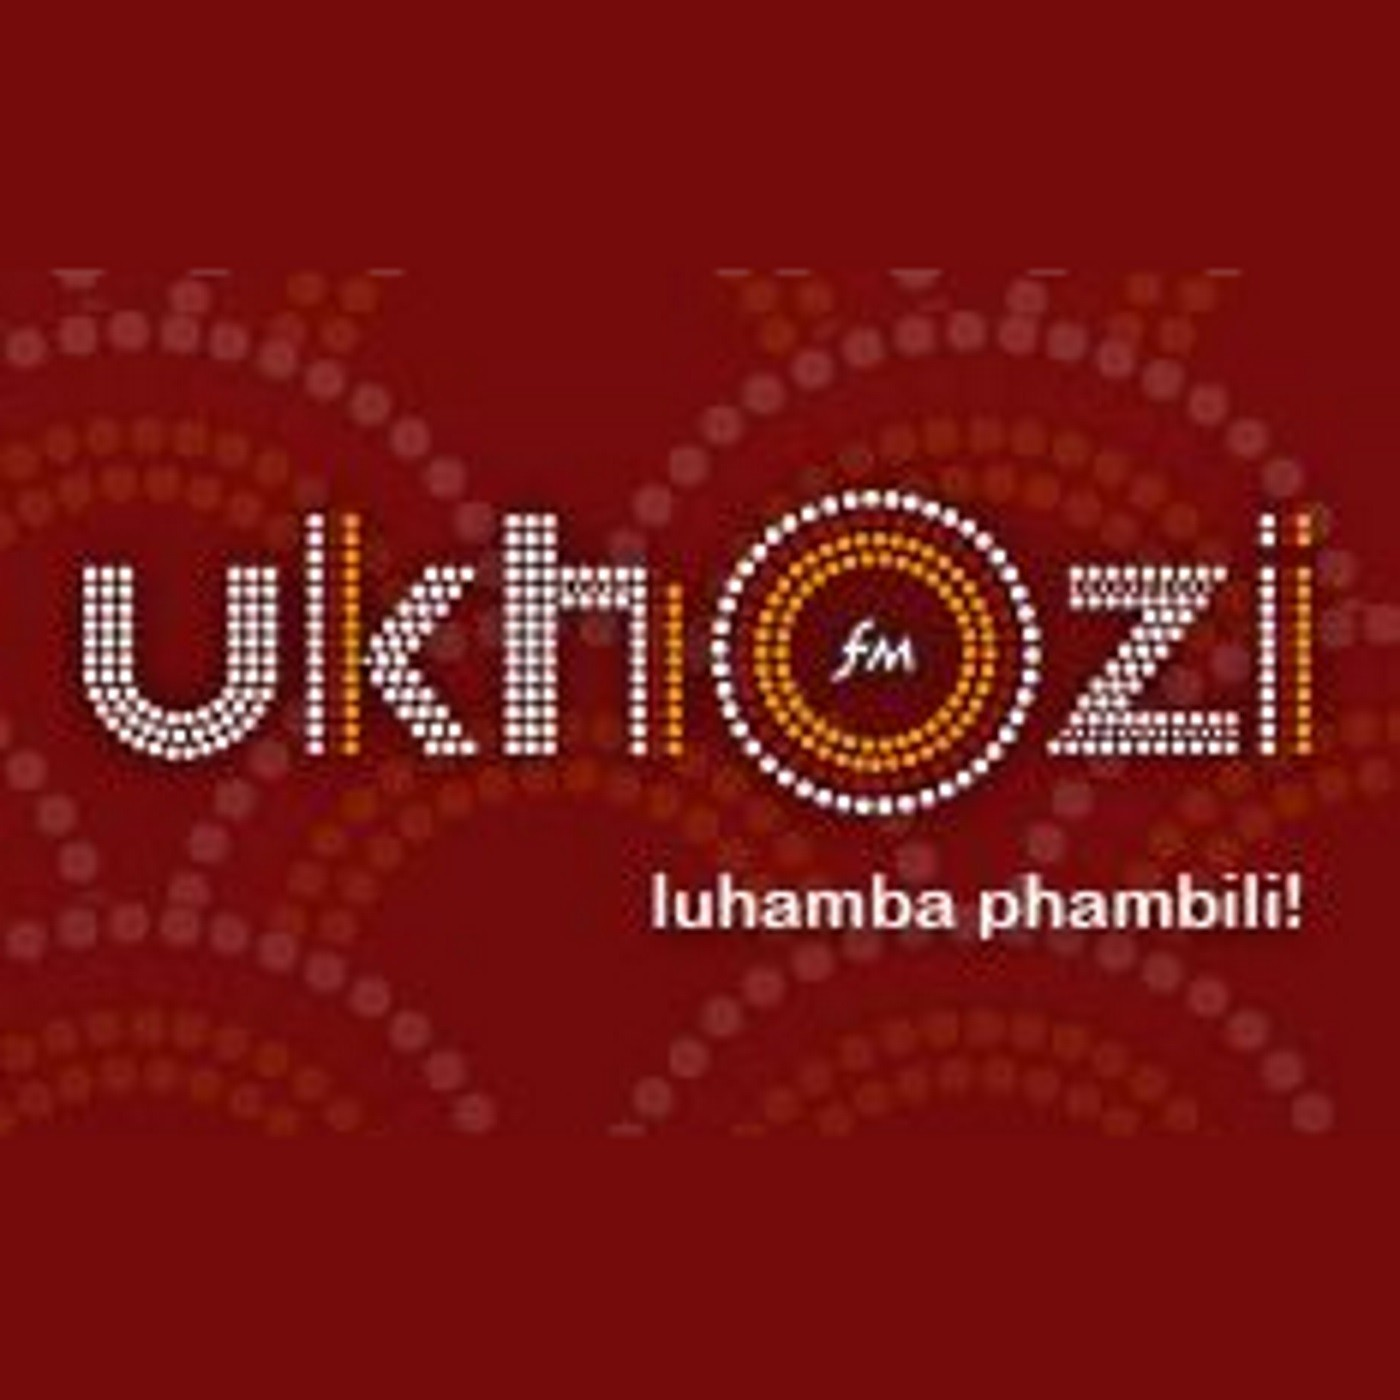 Khuthazeka no Sthembiso Zondo_Imfihlo yokuphumelela